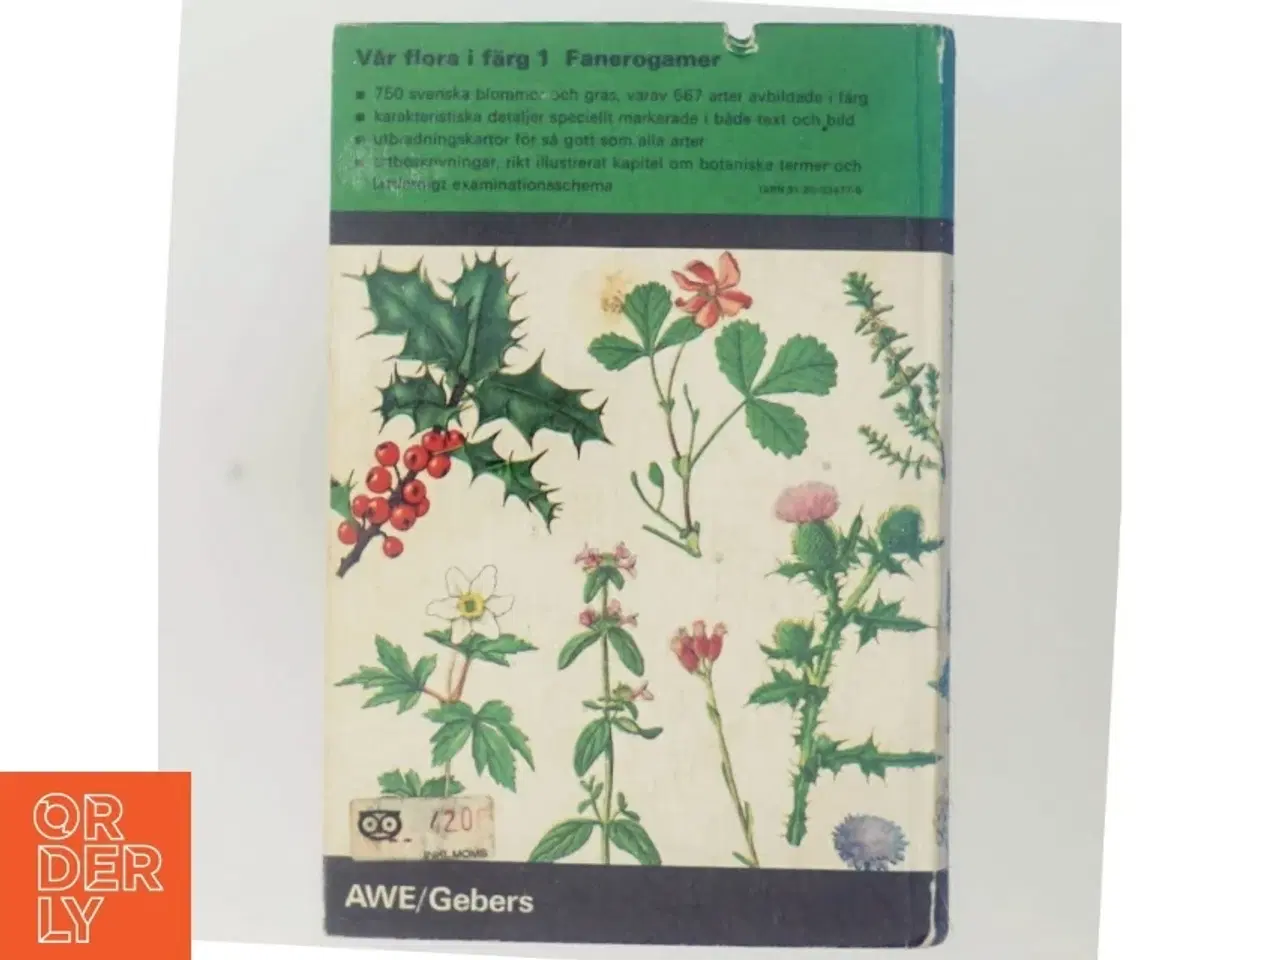 Billede 3 - Vår flora i färg 1 af Ivar Elvers (bog) fra AWE/Gebers